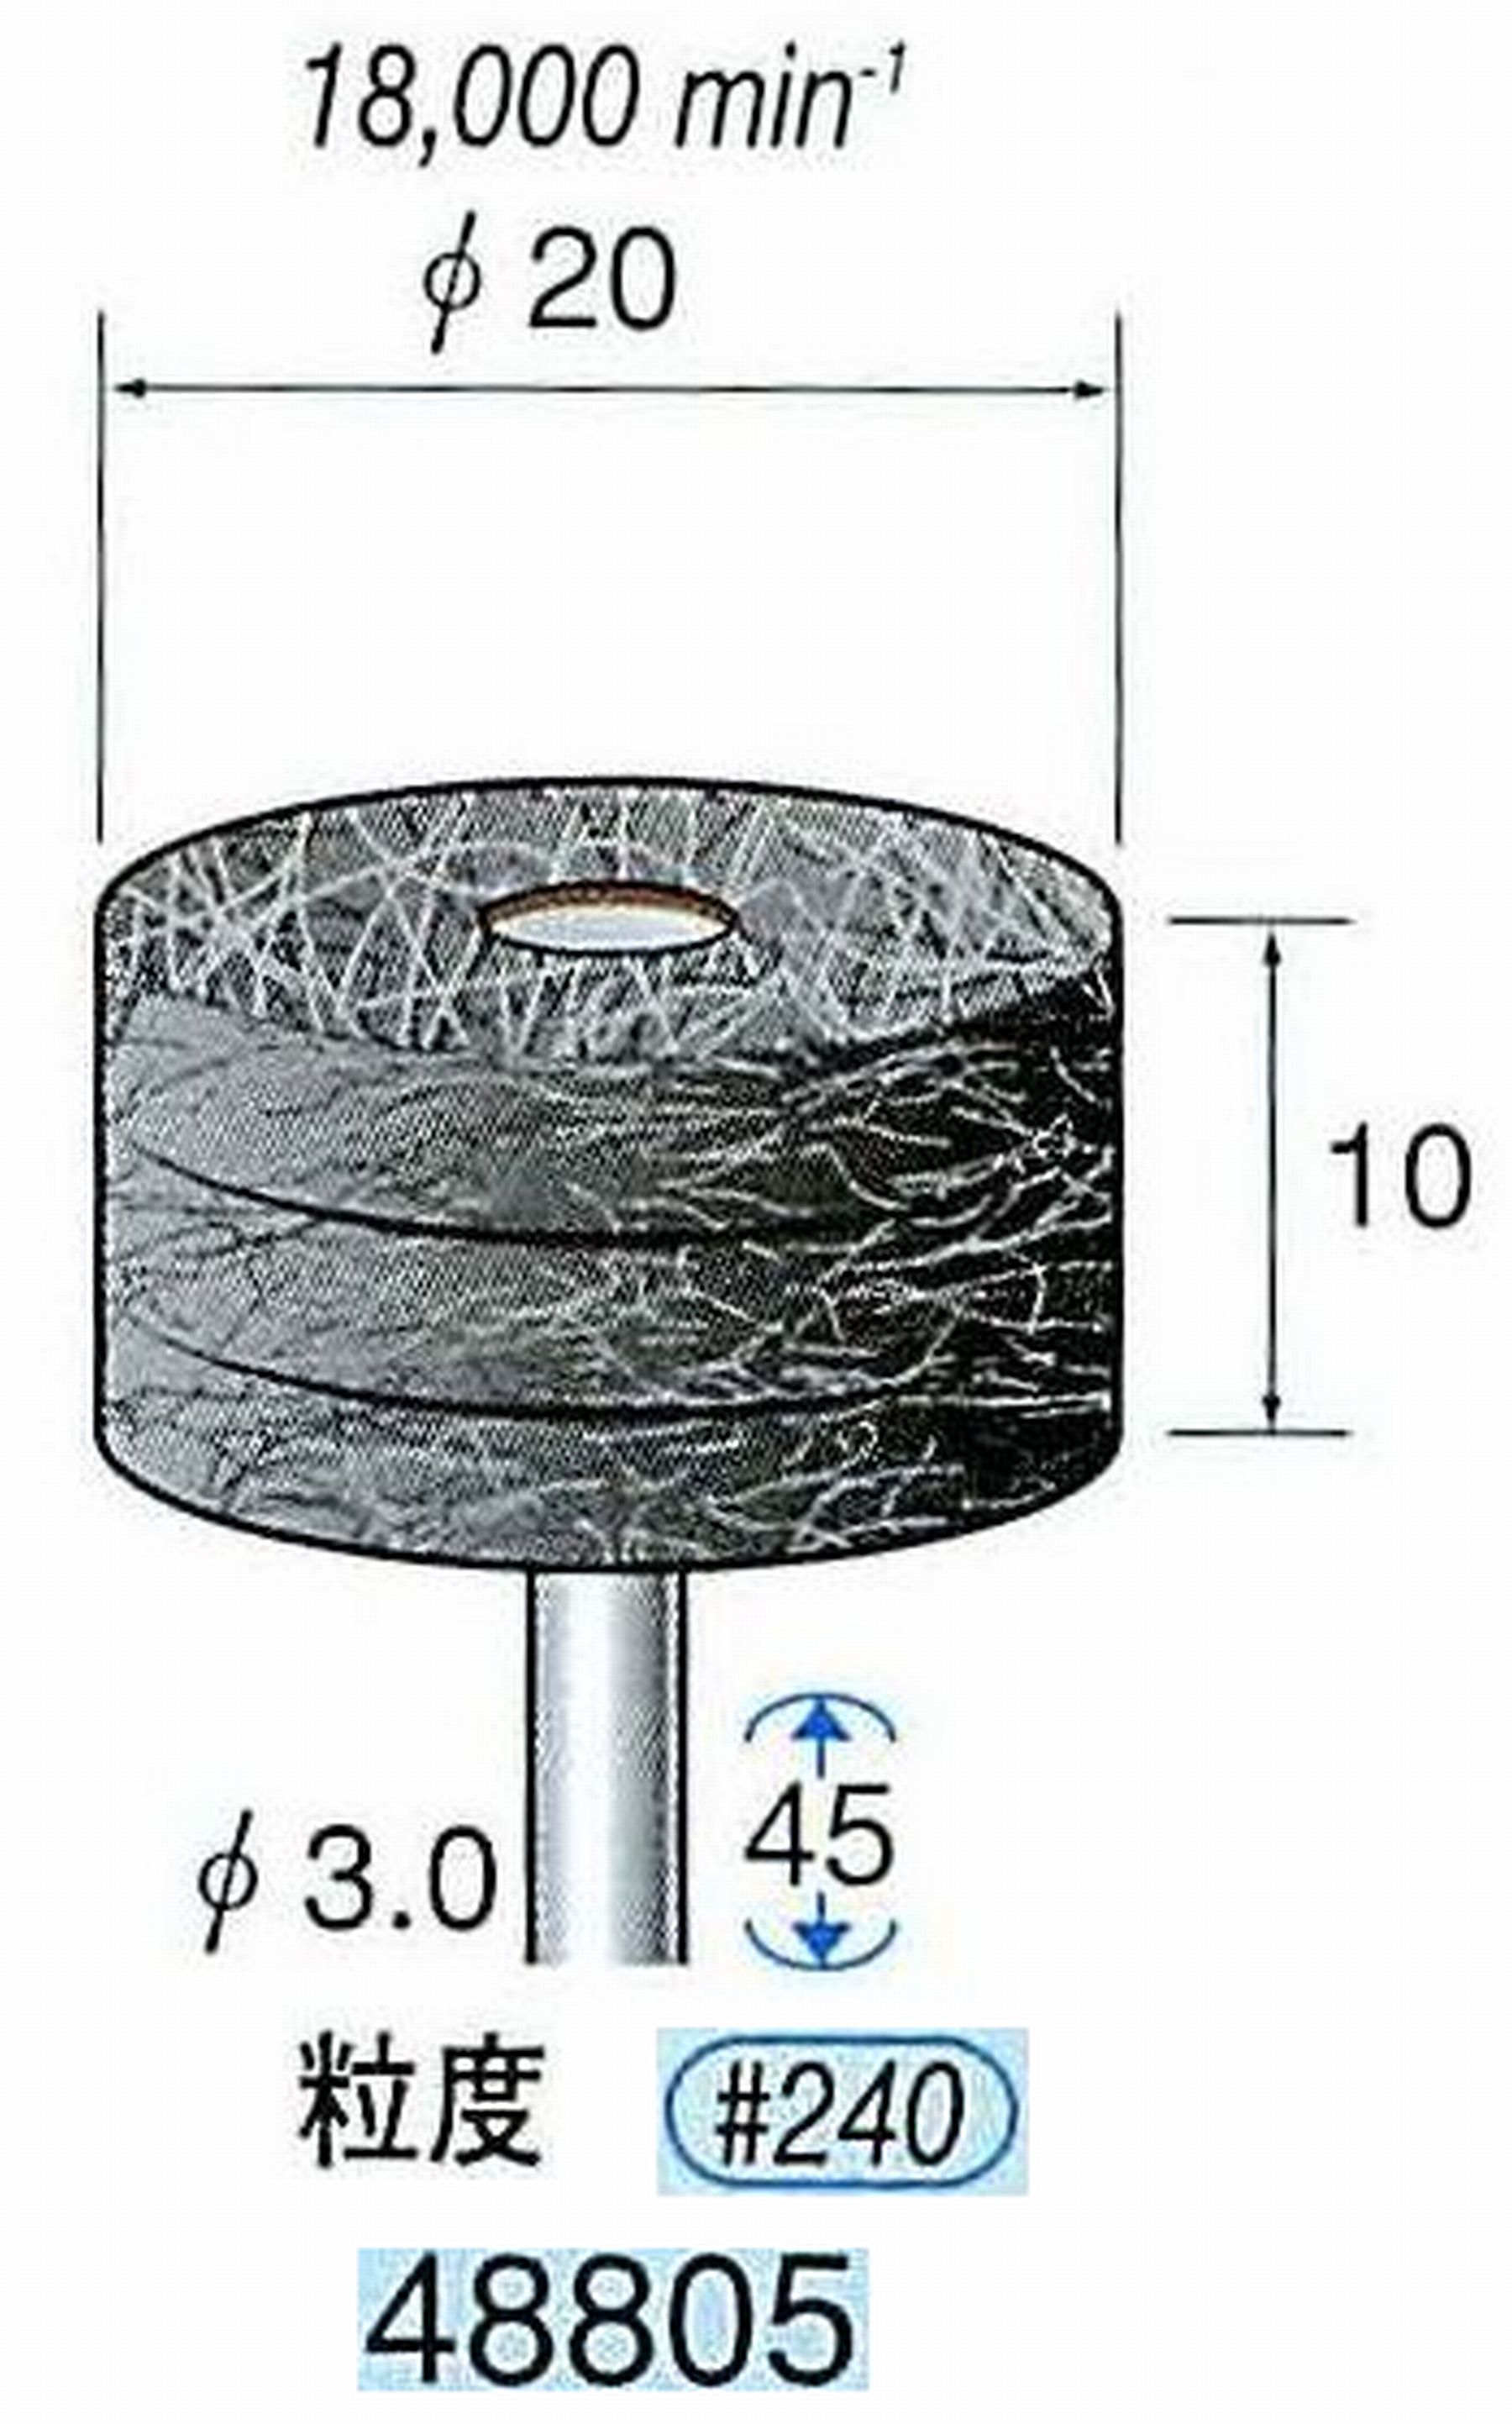 ナカニシ/NAKANISHI スポンジサンダー(研磨砥粒入り) 軸径(シャンク)φ3.0mm 48805